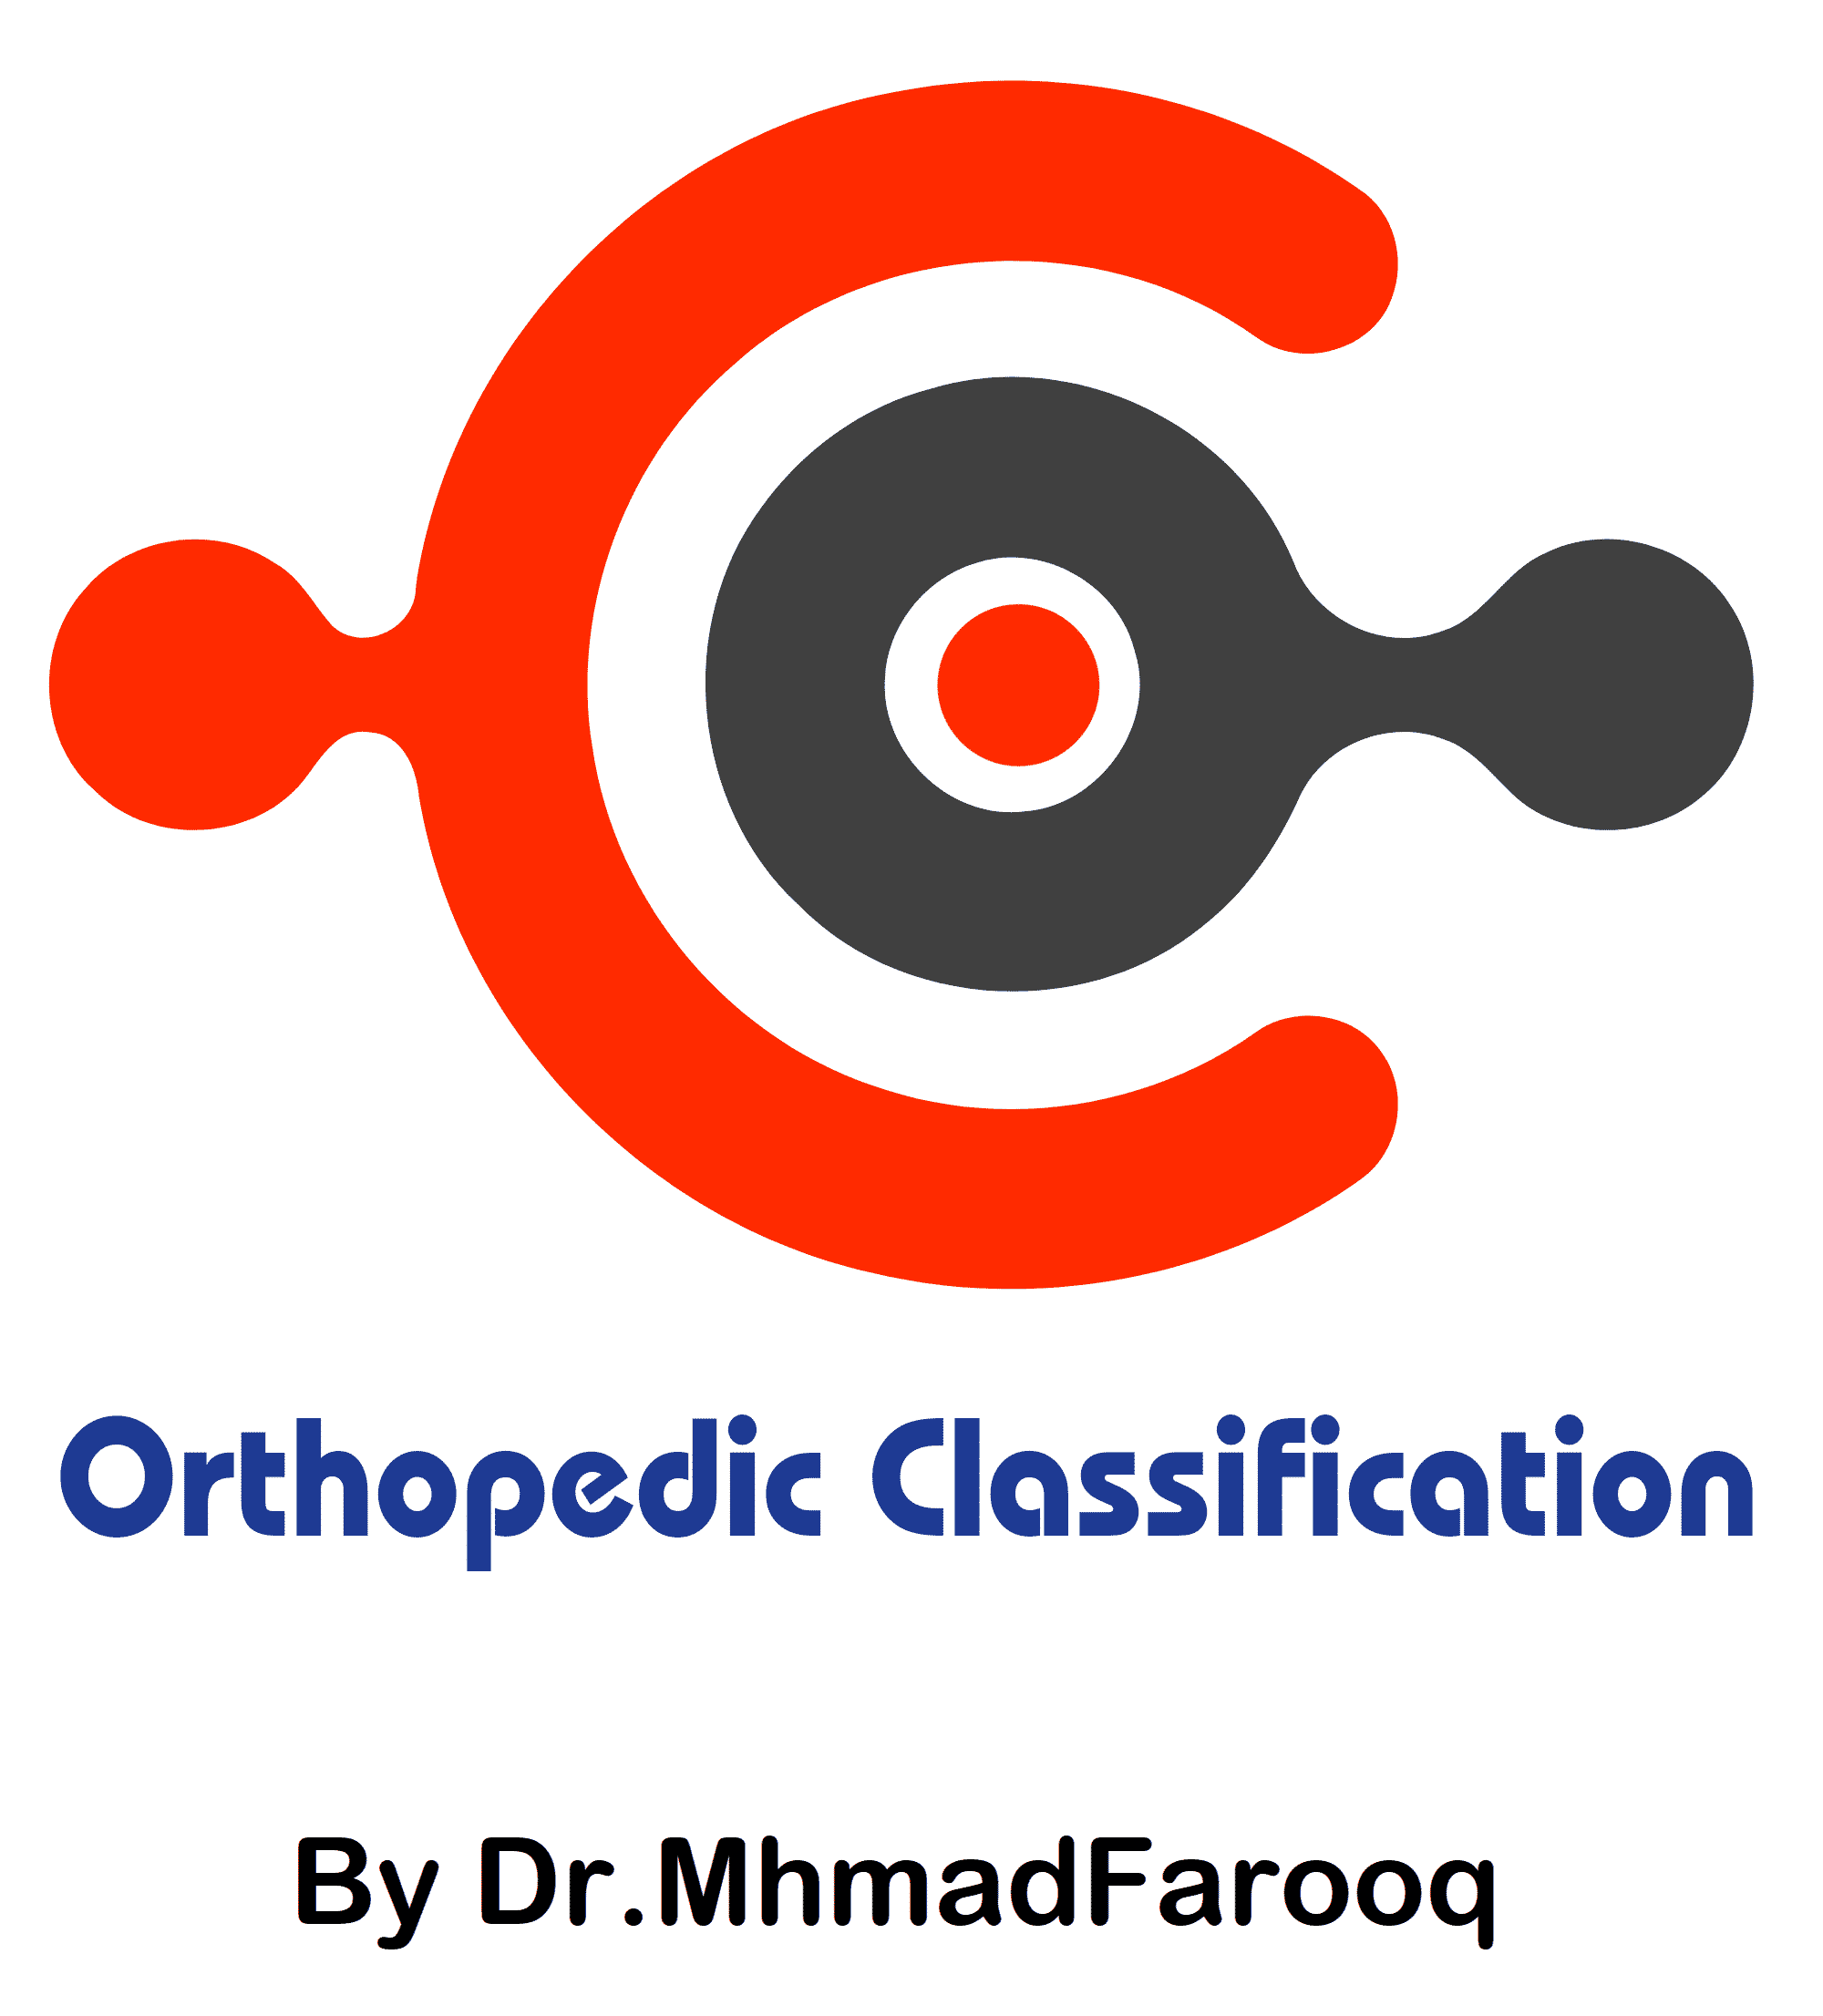  Orthopedic Classification App 